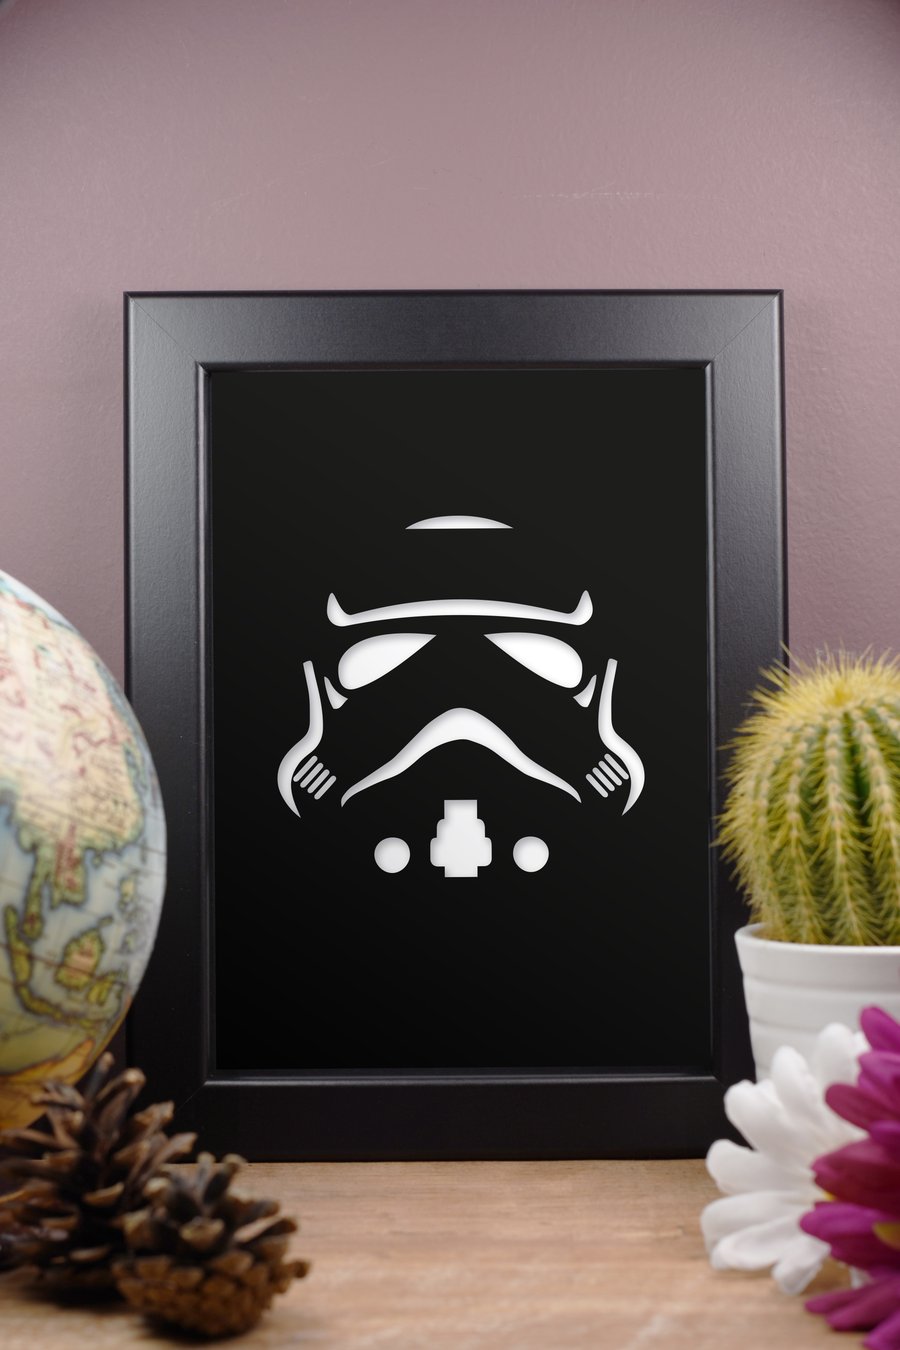 Star Wars Storm Trooper Tie Fighter Framed Artwork - 13cm x 18cm